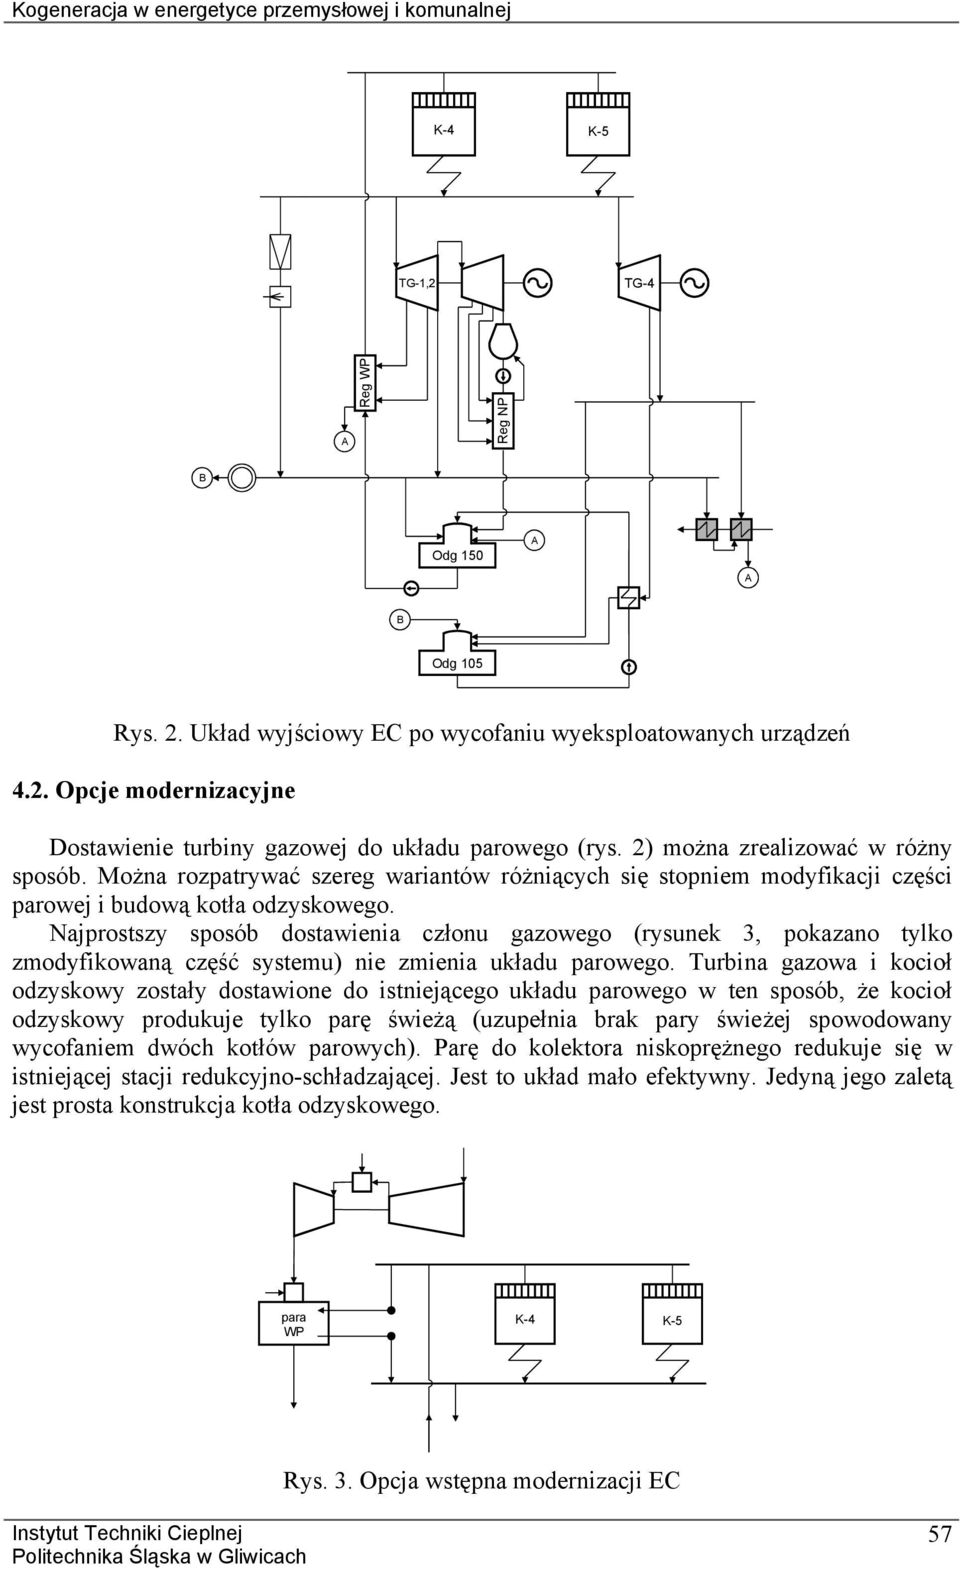 ajprosszy sposób dosawienia członu gazowego (rysunek 3, pokazano ylko zmodyfikowaną część sysemu) nie zmienia układu parowego.